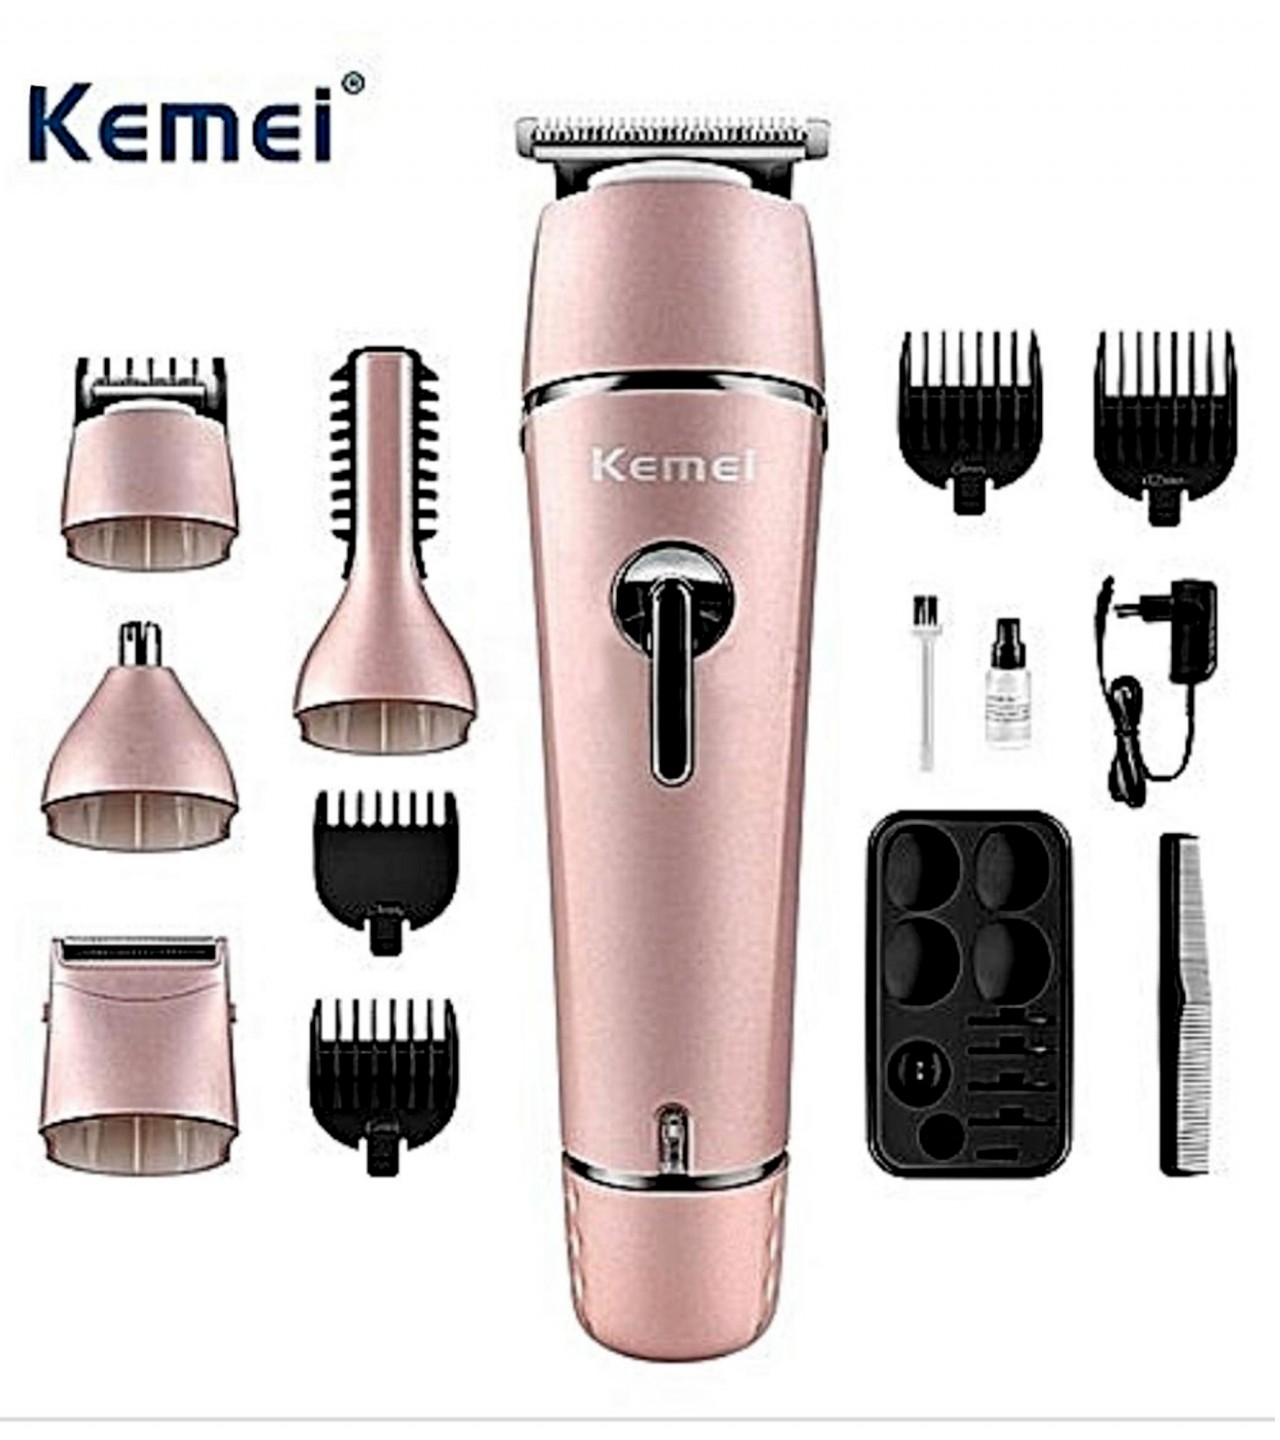 Kemei Professional Super Grooming Kit For Men 10 In 1 Km 1015 (Original)